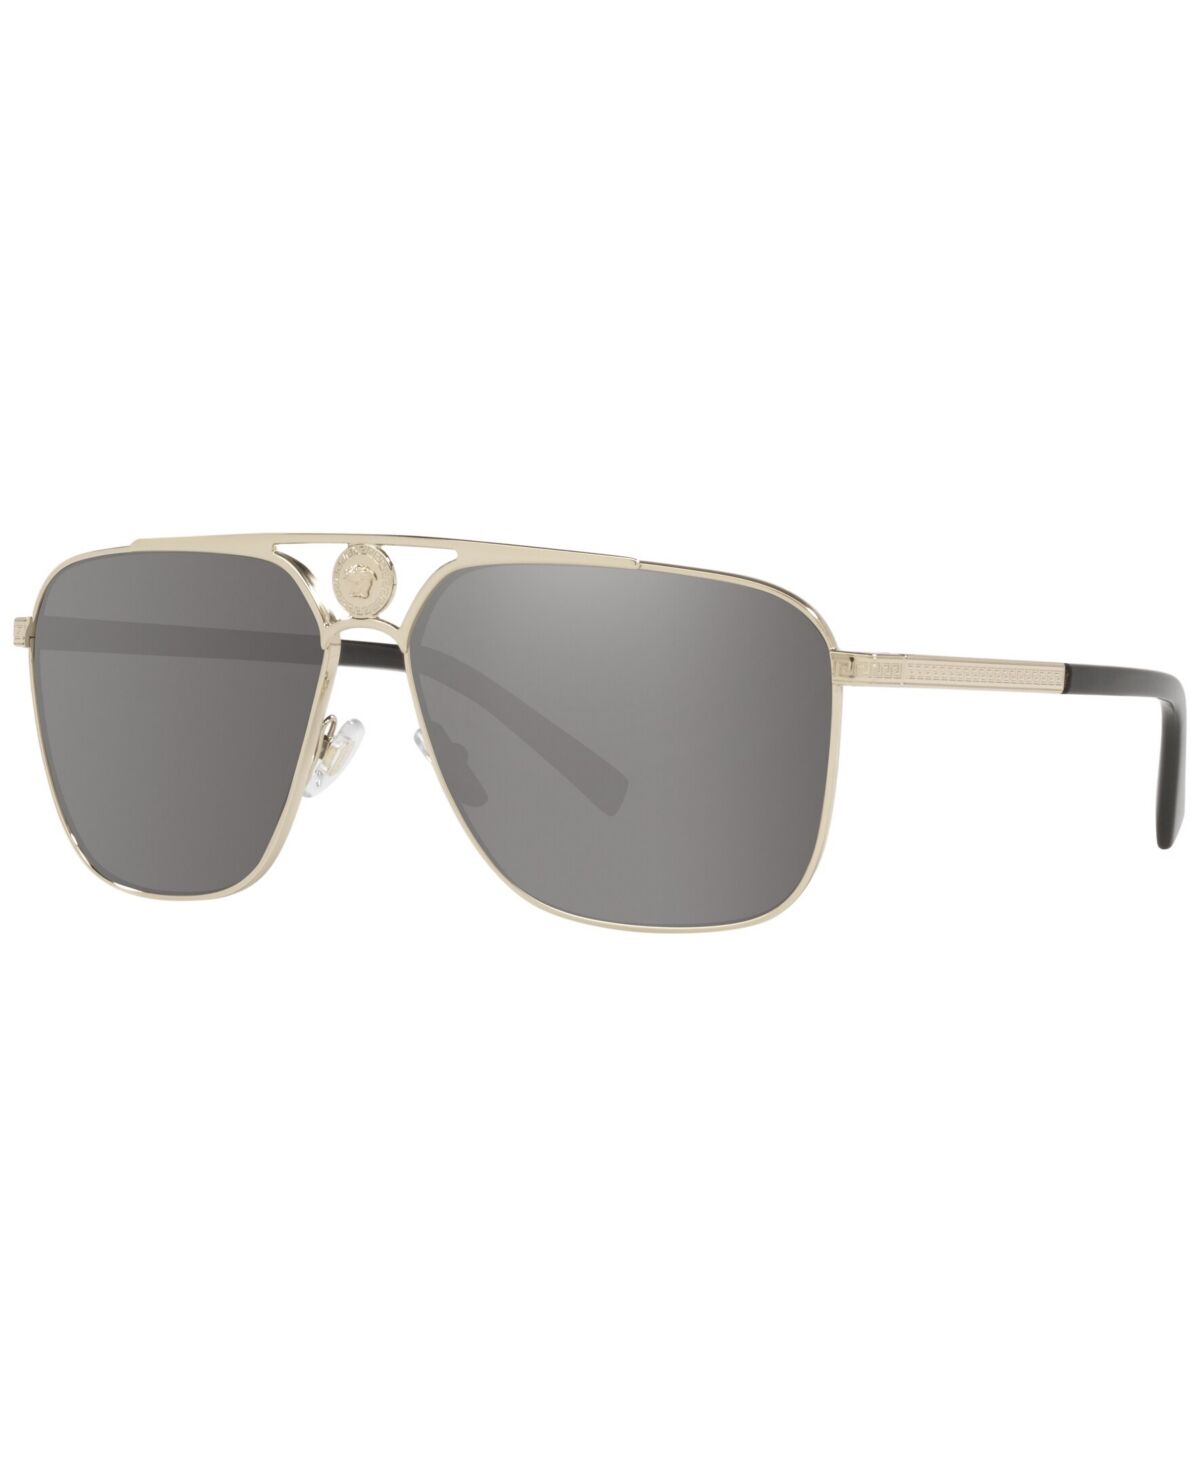 Versace Men's Sunglasses, VE2238 - Pale Gold-Tone